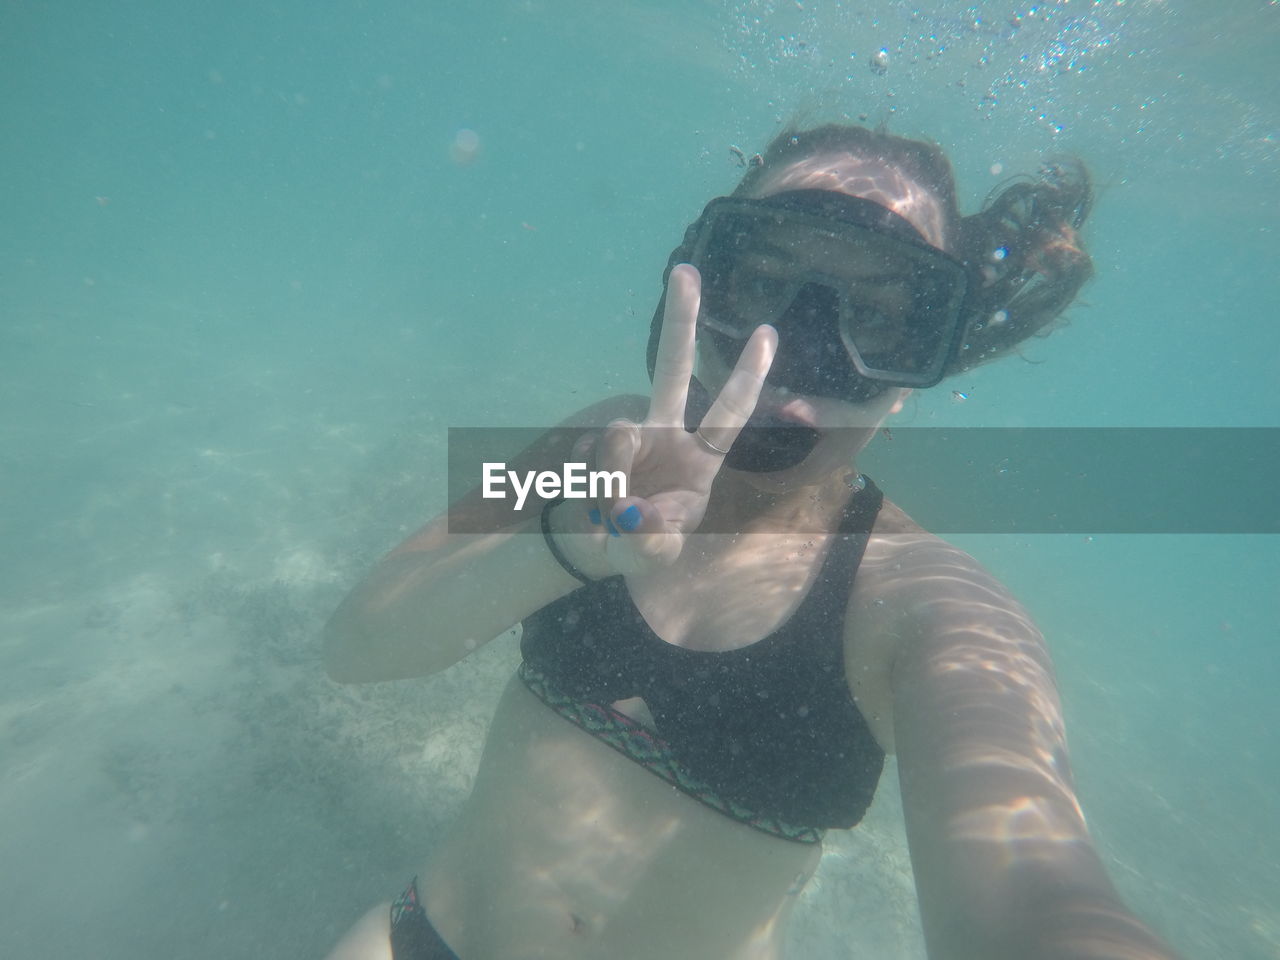 Selfie underwater in bermuda